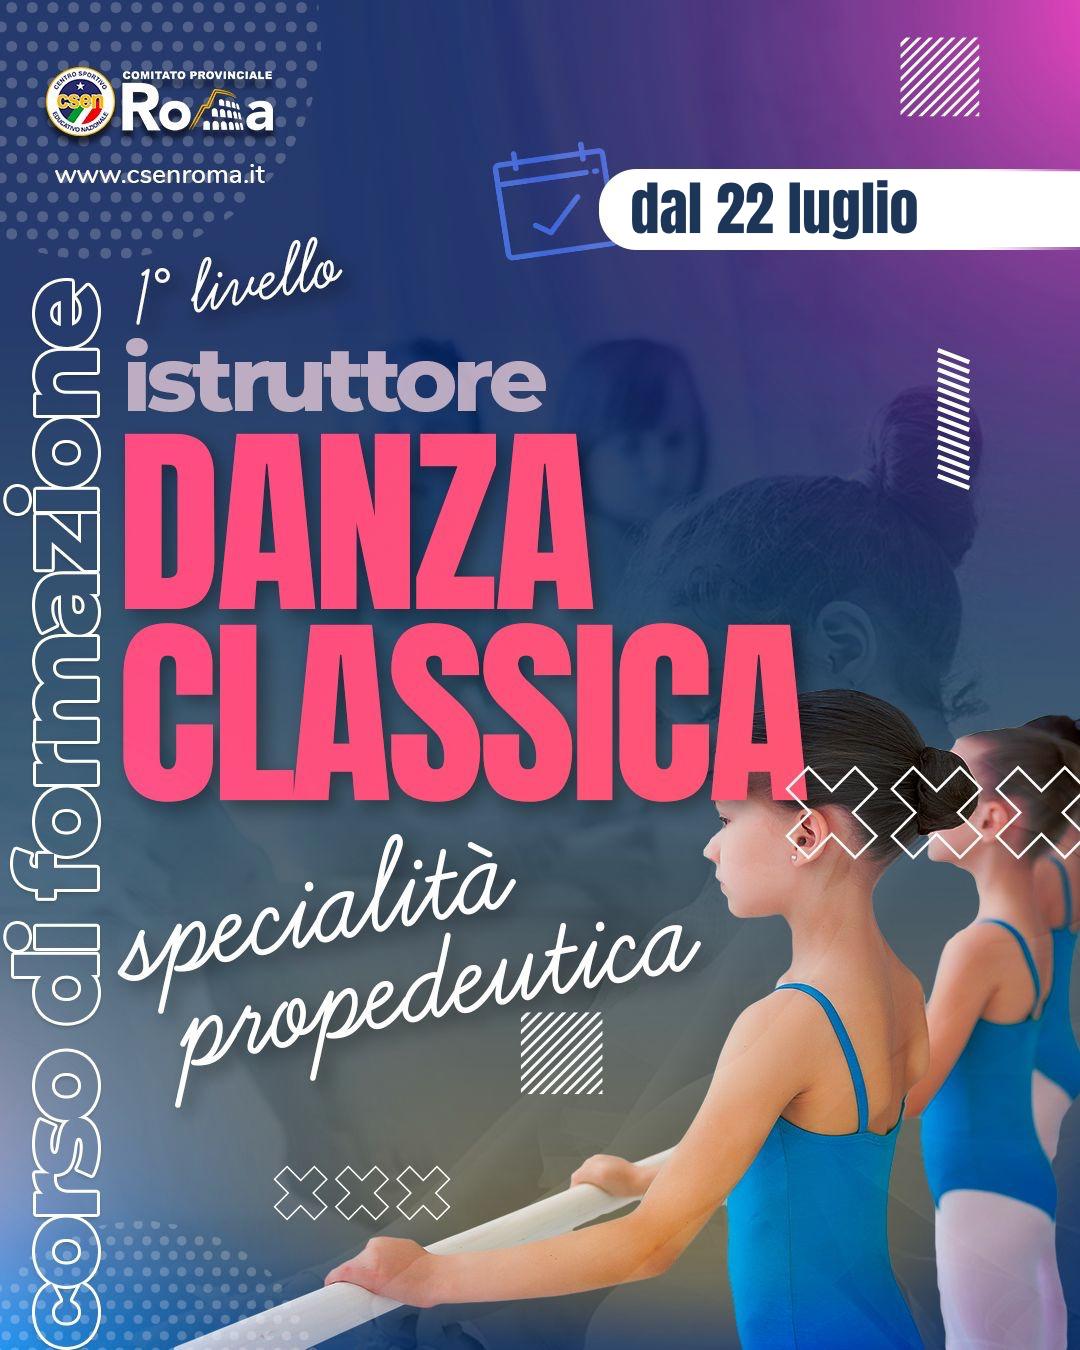 Istruttore Danza Classica 1° Livello Specialità Propedeutica